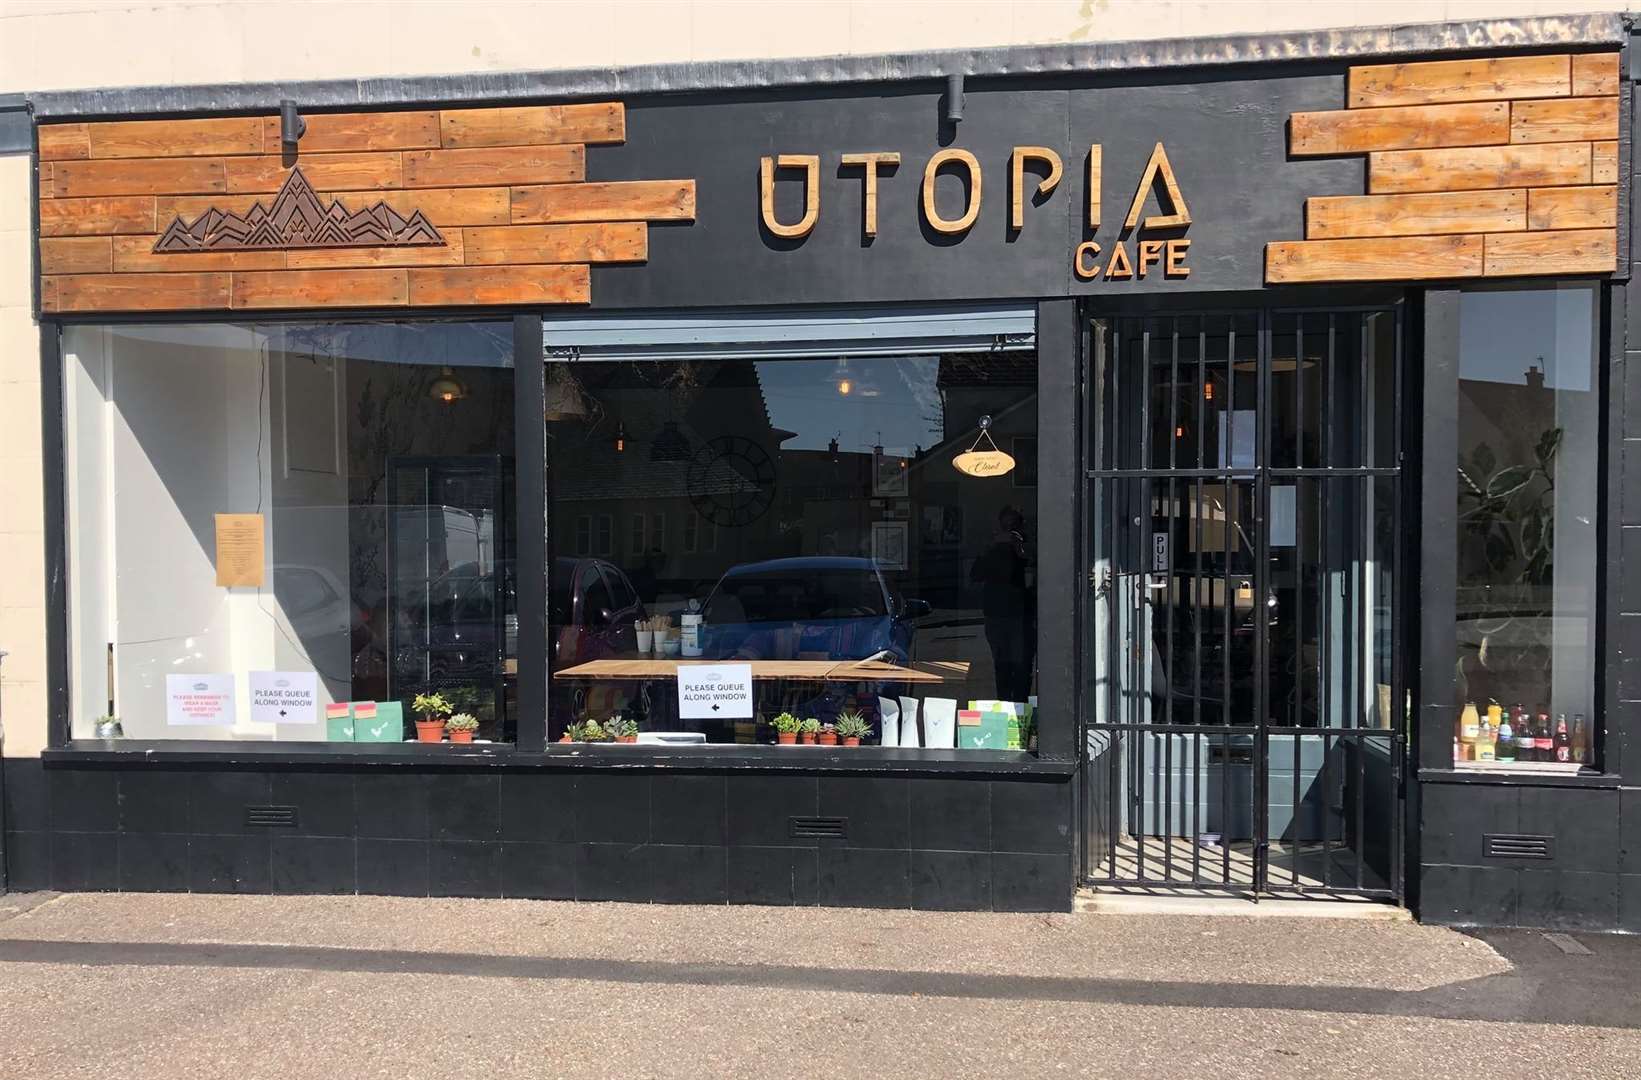 Utopia Café in Hilton.